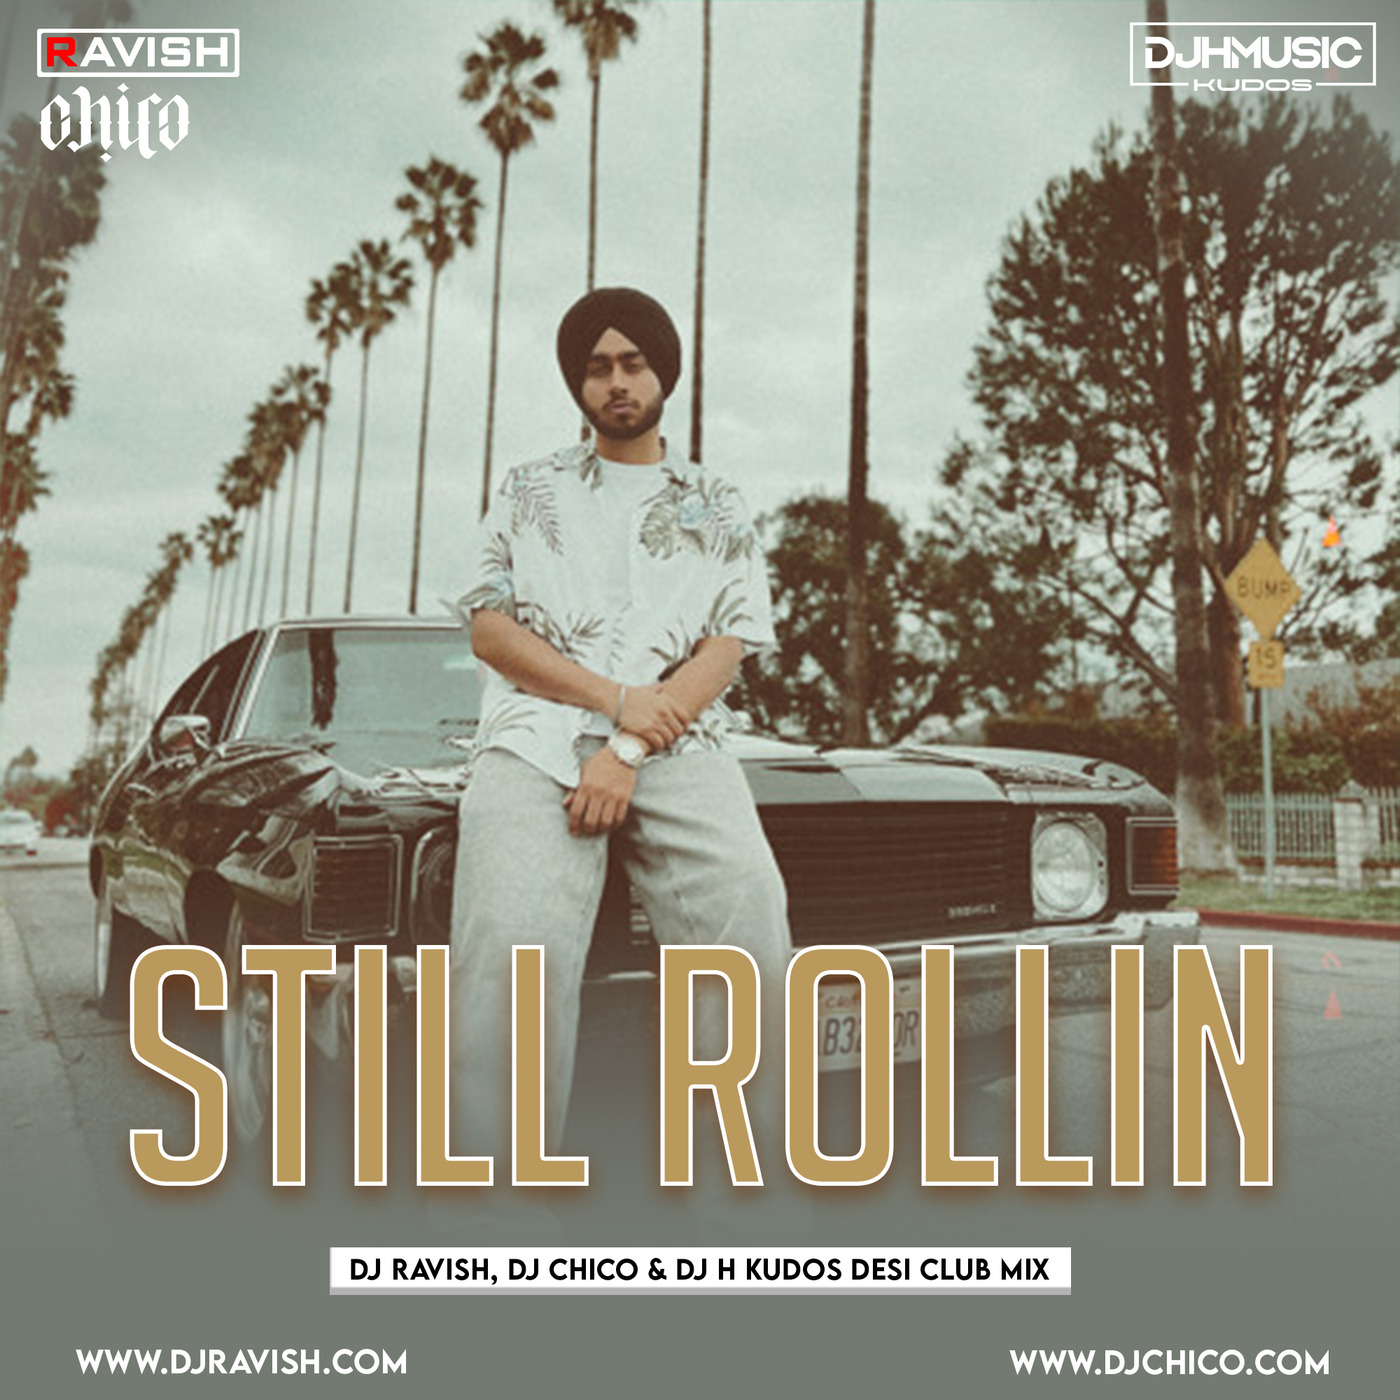 Shubh - Still Rollin (DJ Ravish, DJ Chico & DJ H Kudos Desi Club Mix)